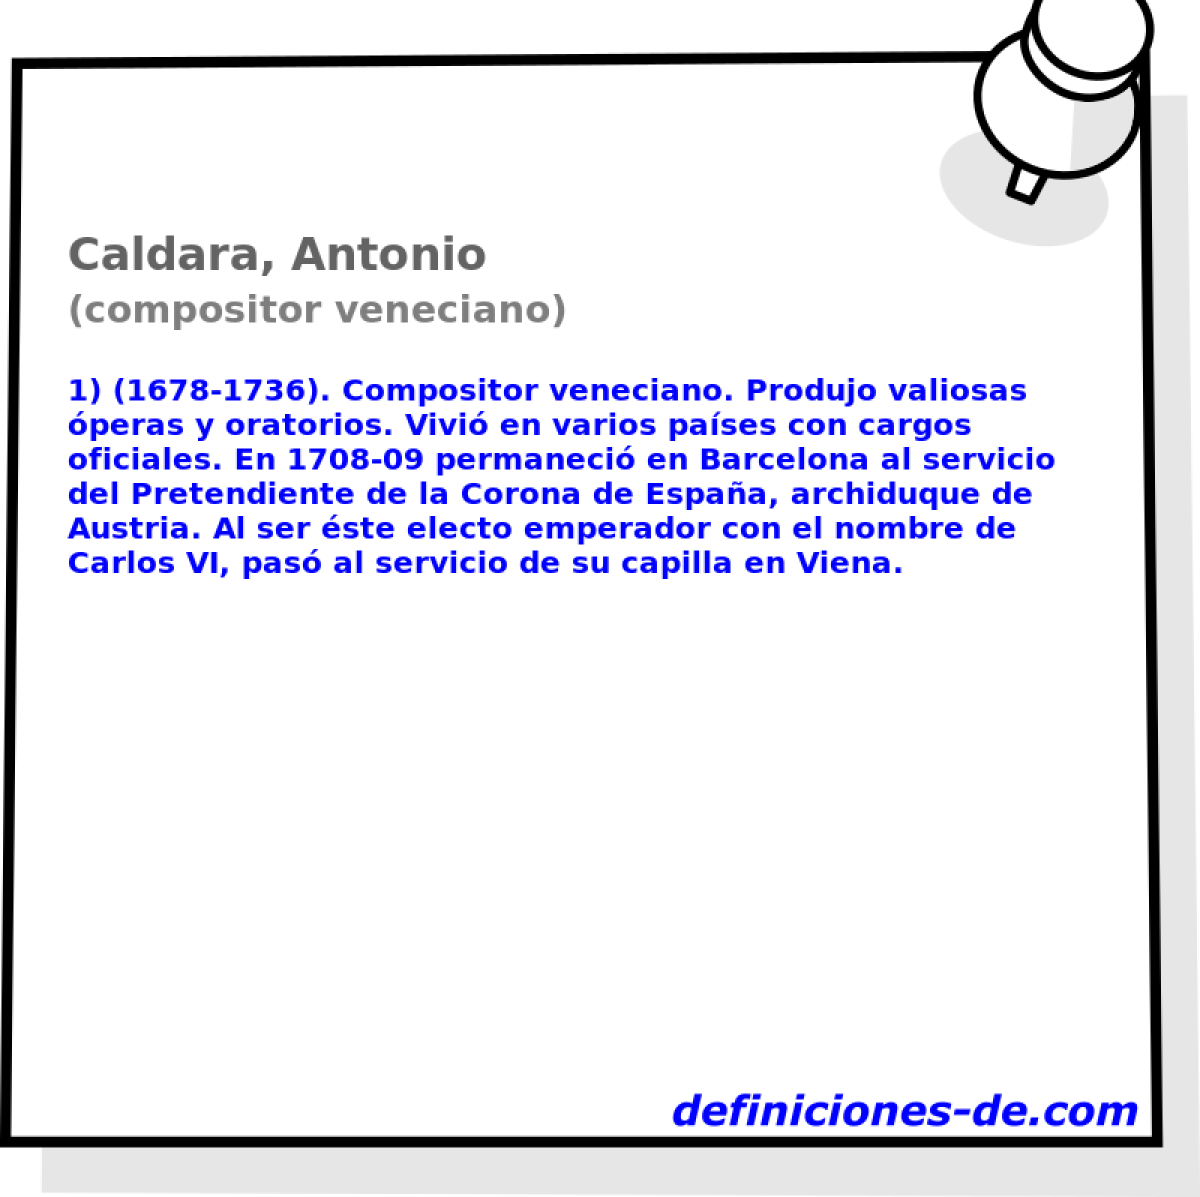 Caldara, Antonio (compositor veneciano)